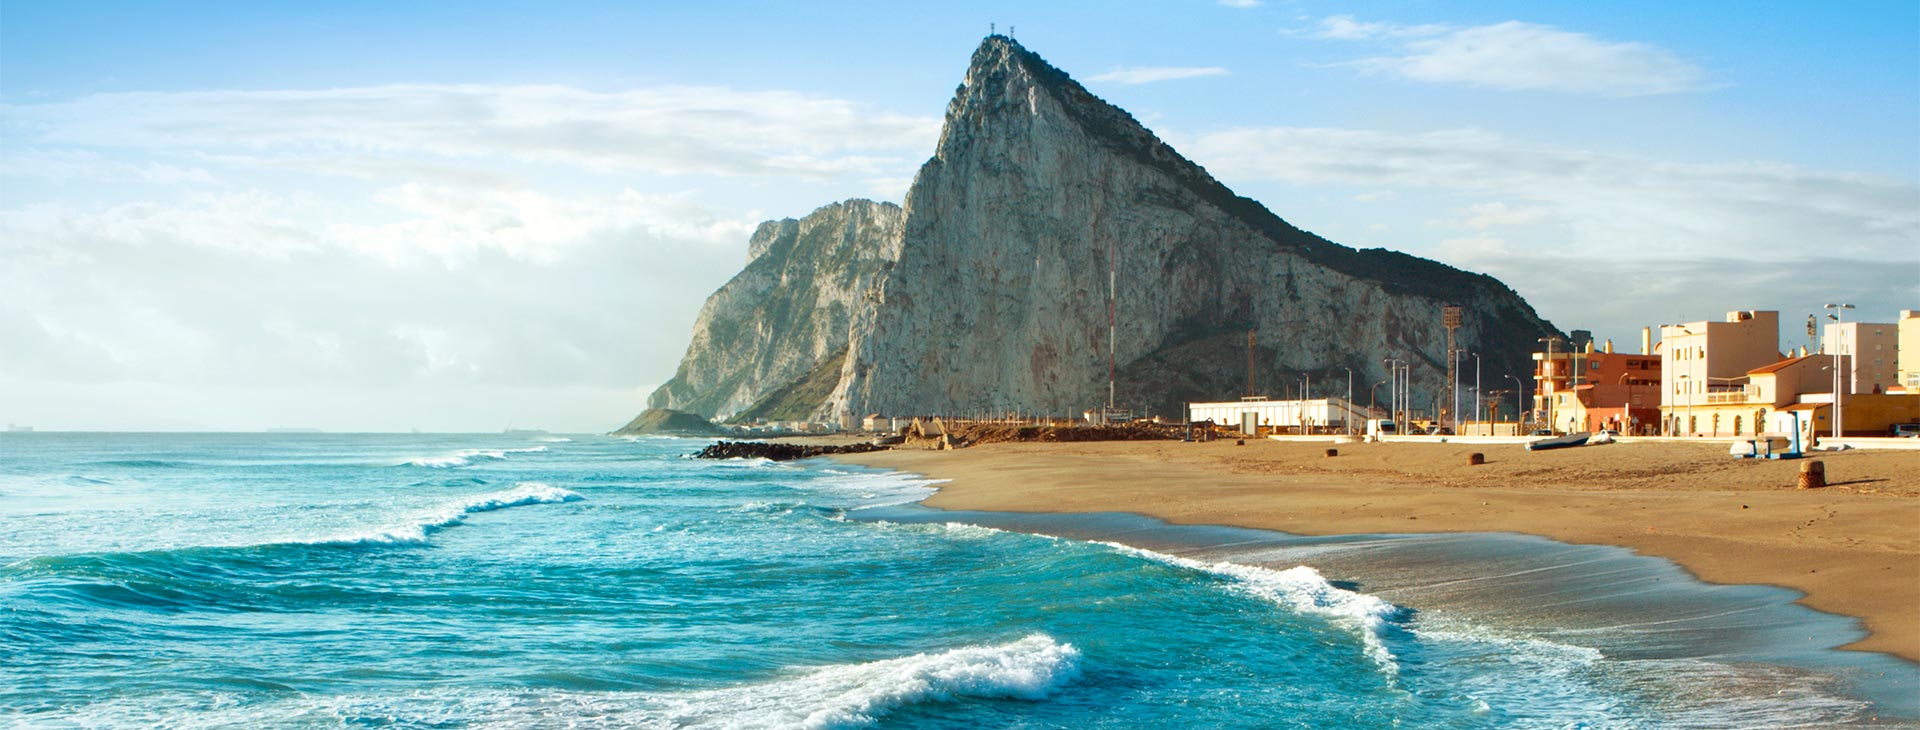 Hiszpania i Maroko - po obu stronach Gibraltaru